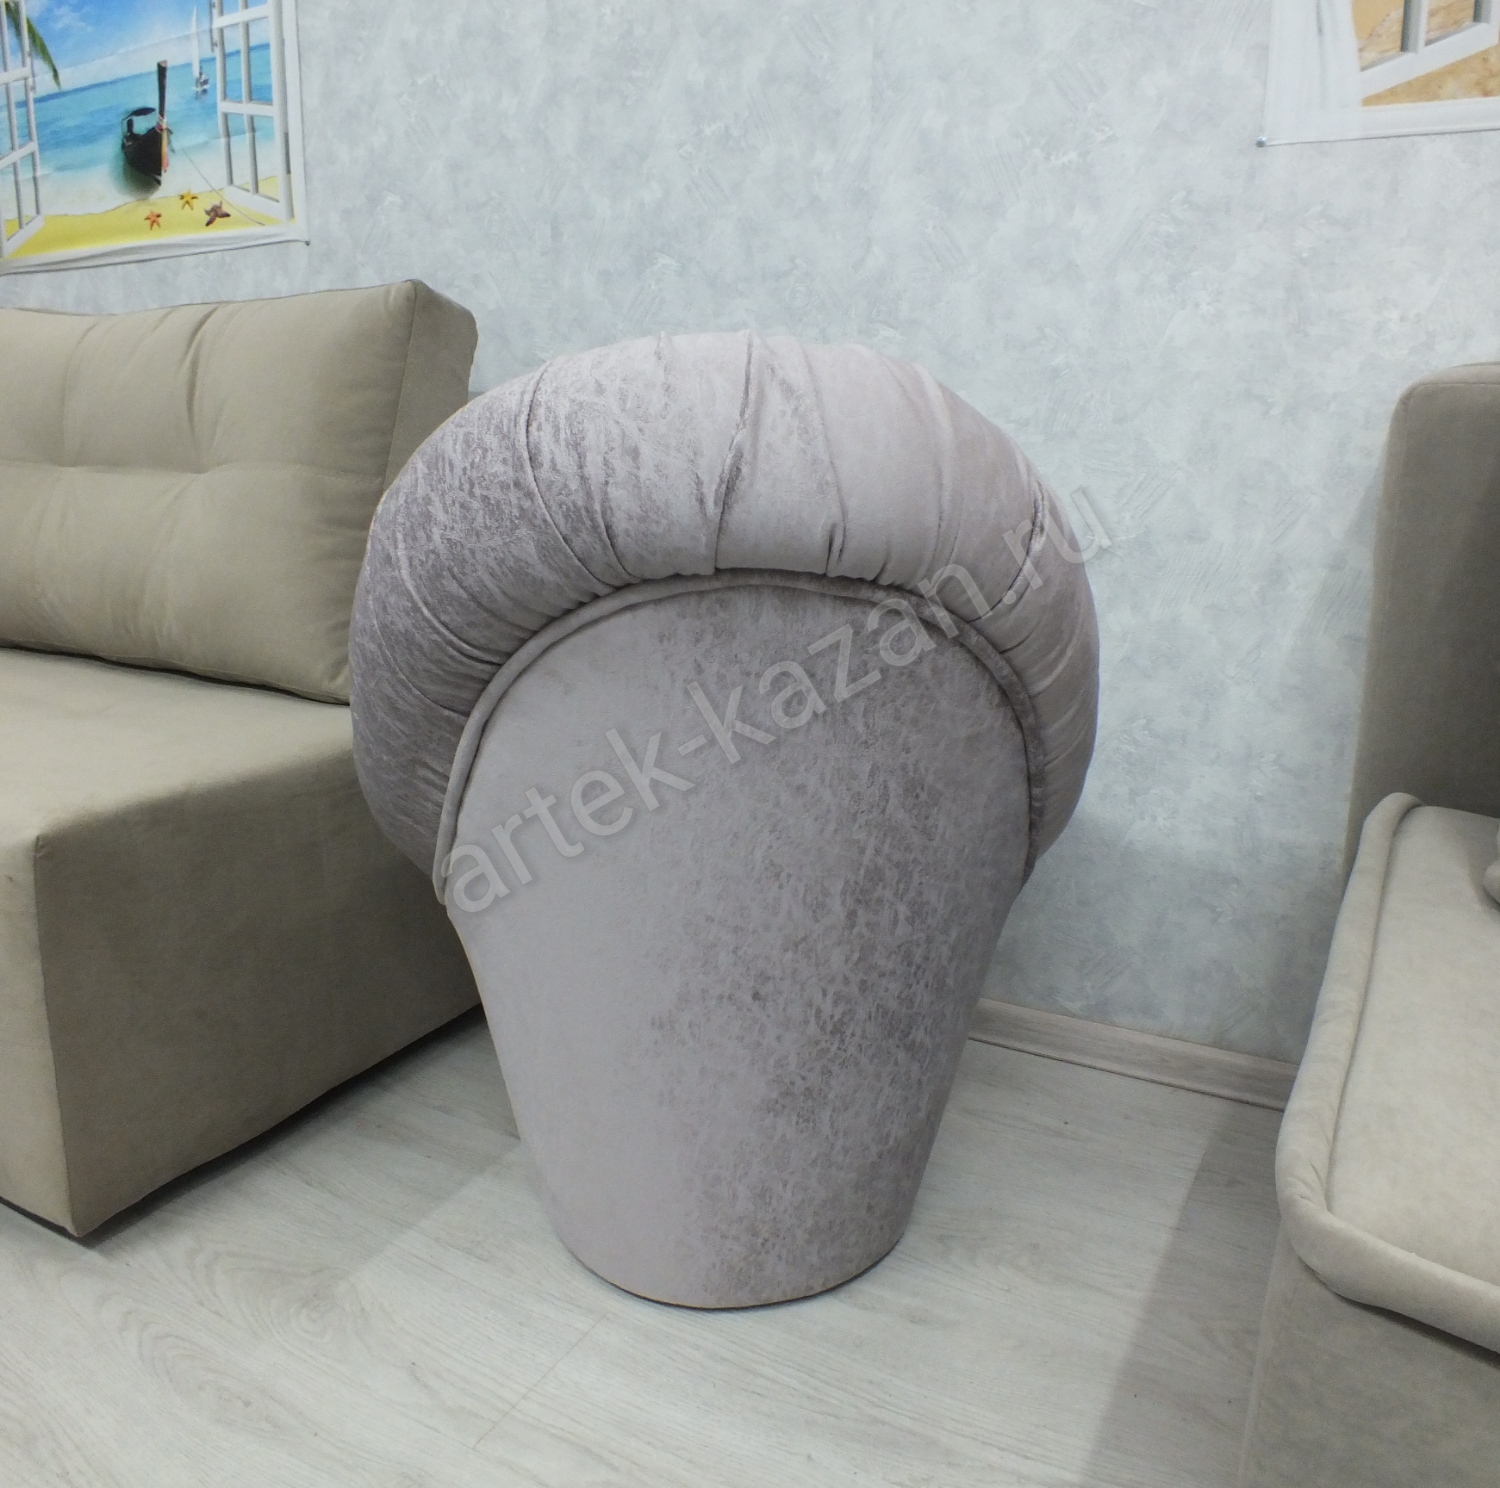 Кресло-пуф, фото 9. Купить недорогой диван по низкой цене от производителя можно у нас.